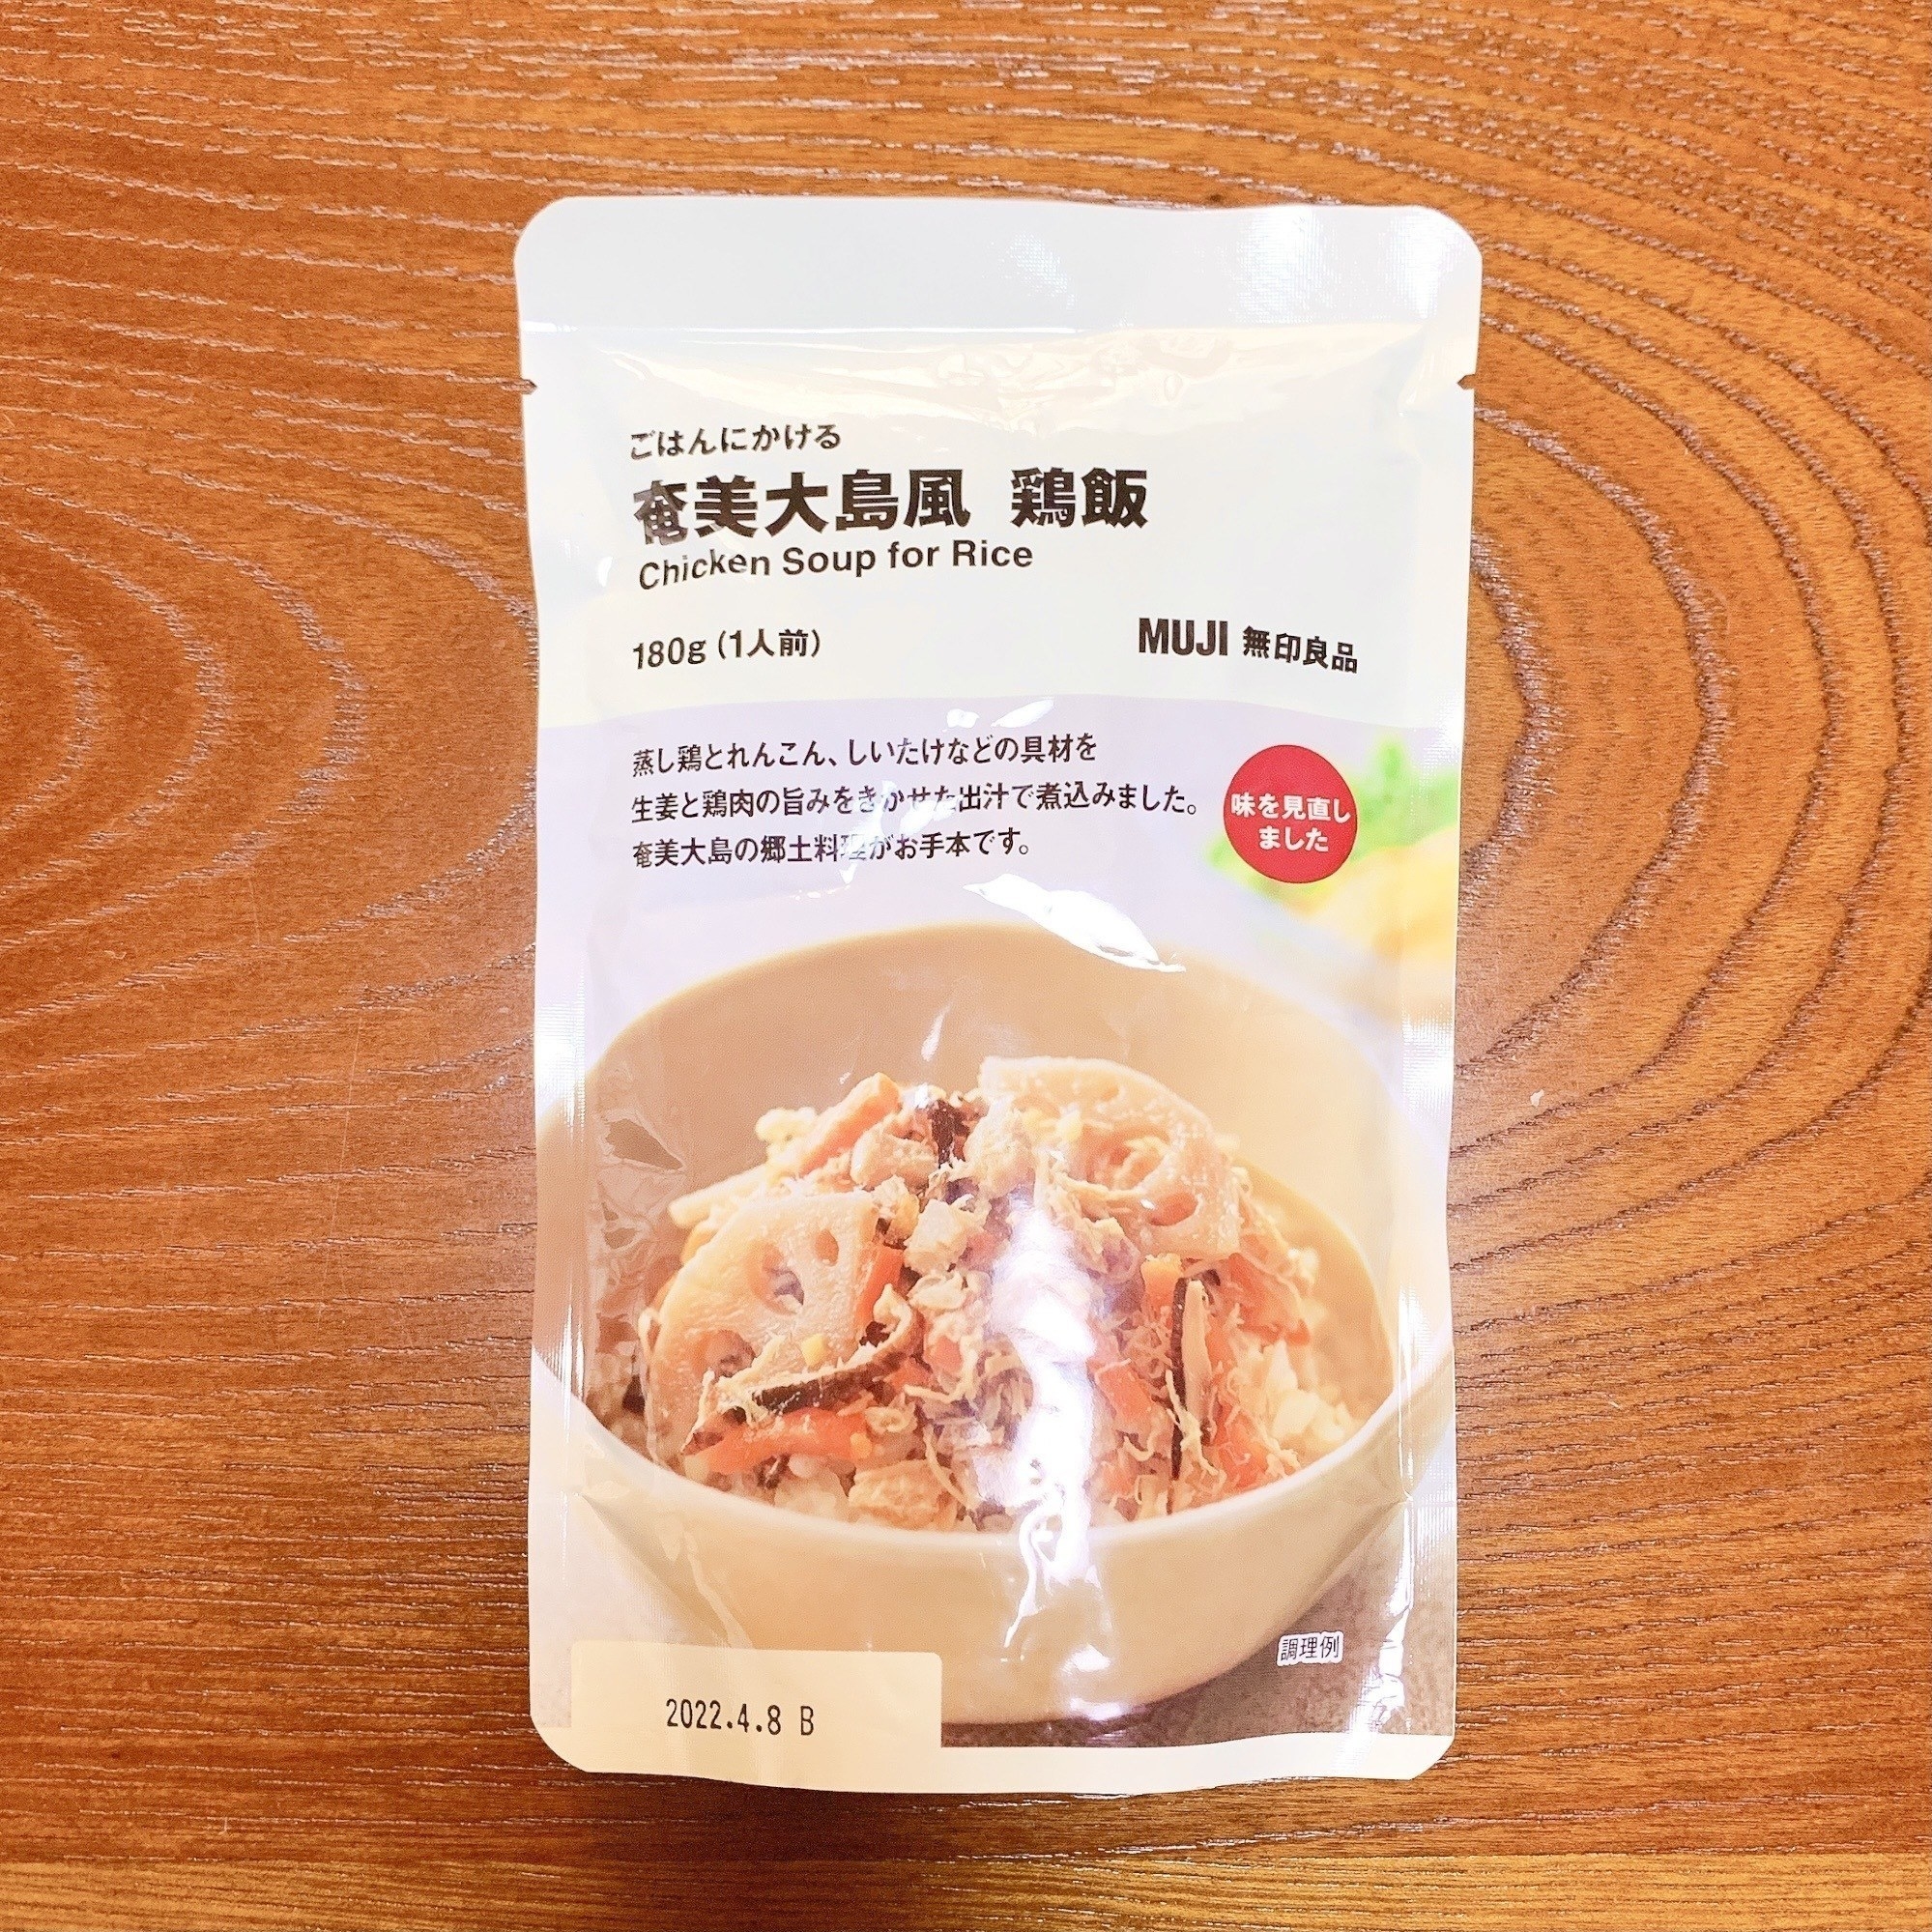 無印良品のおすすめのフード「ごはんにかける 奄美大島風 鶏飯」